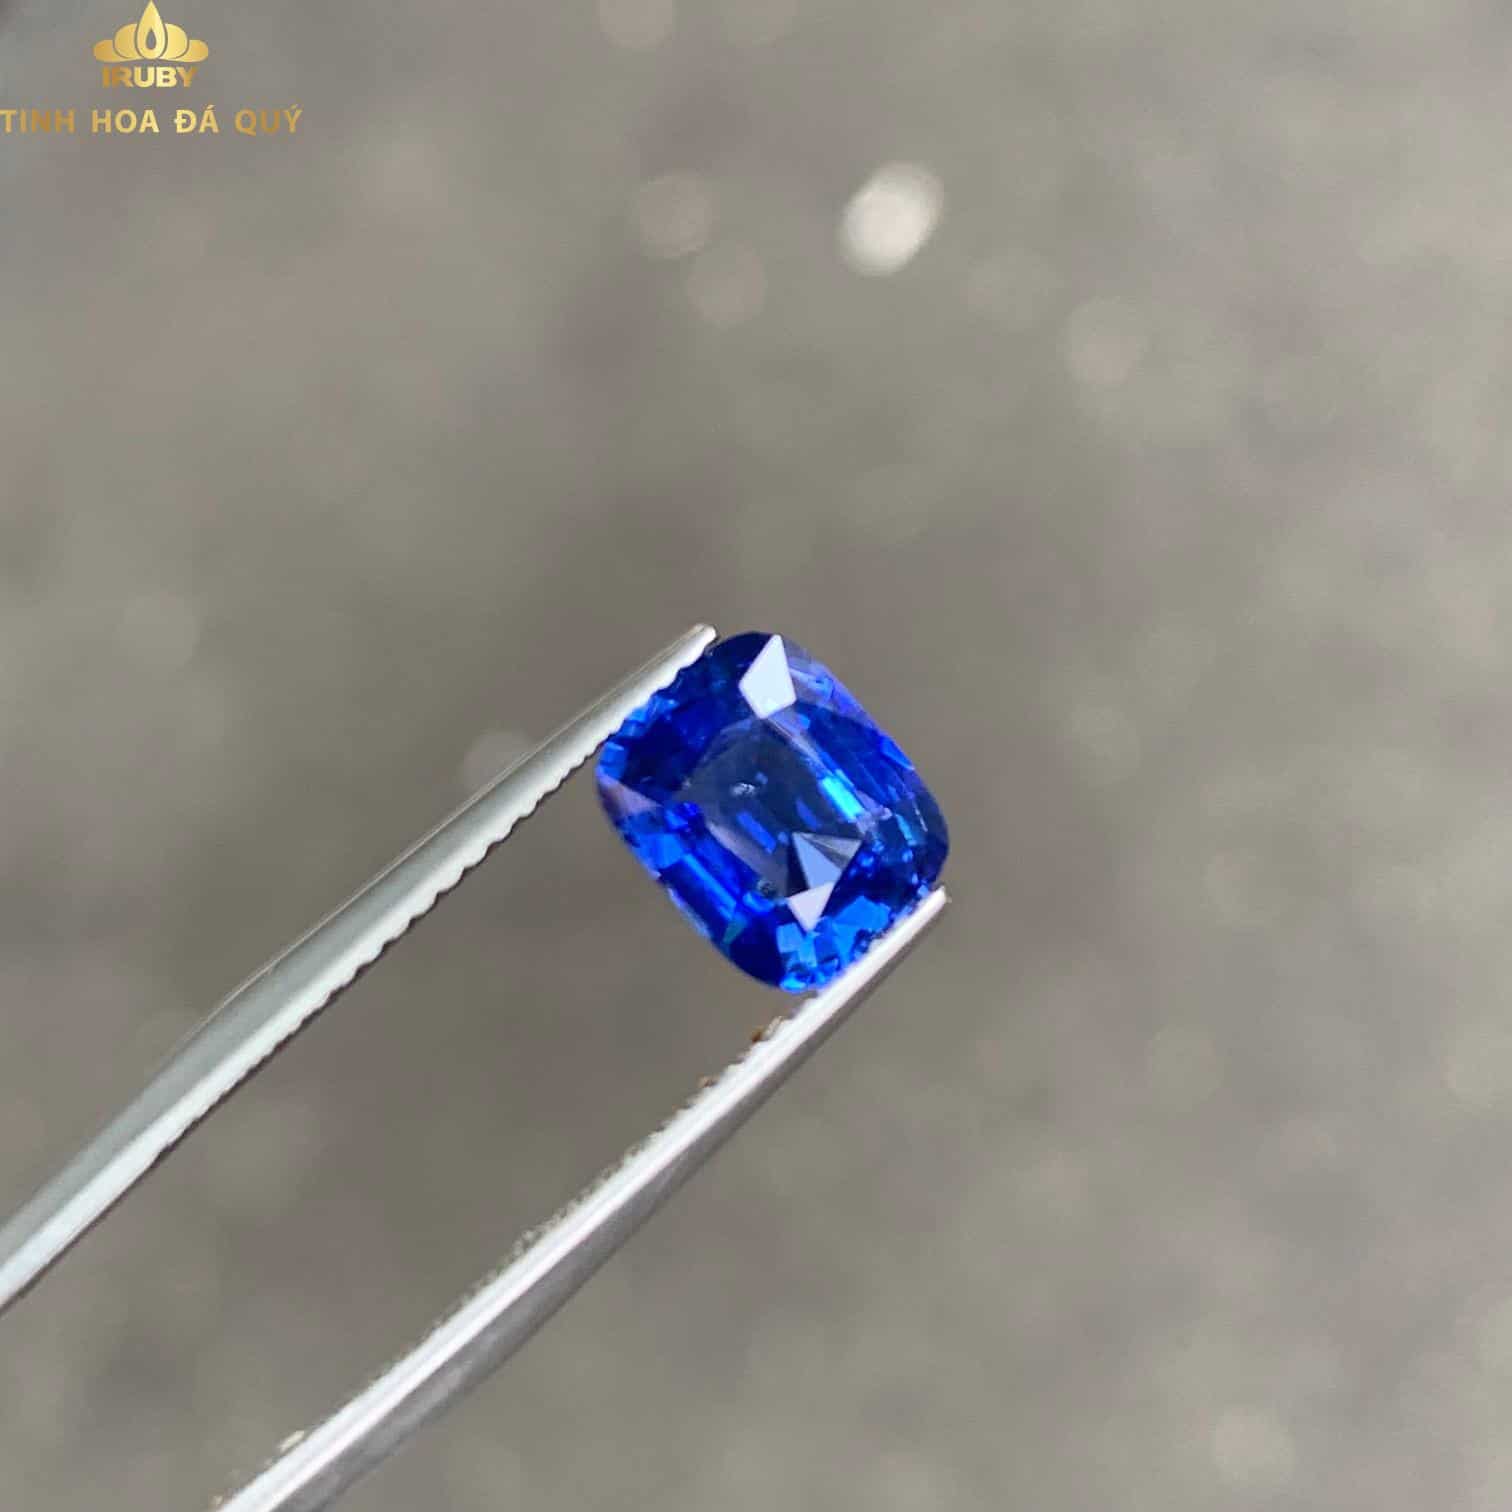 Viên Sapphire xanh lam đẹp long lanh - IRBS2211802 ảnh 2